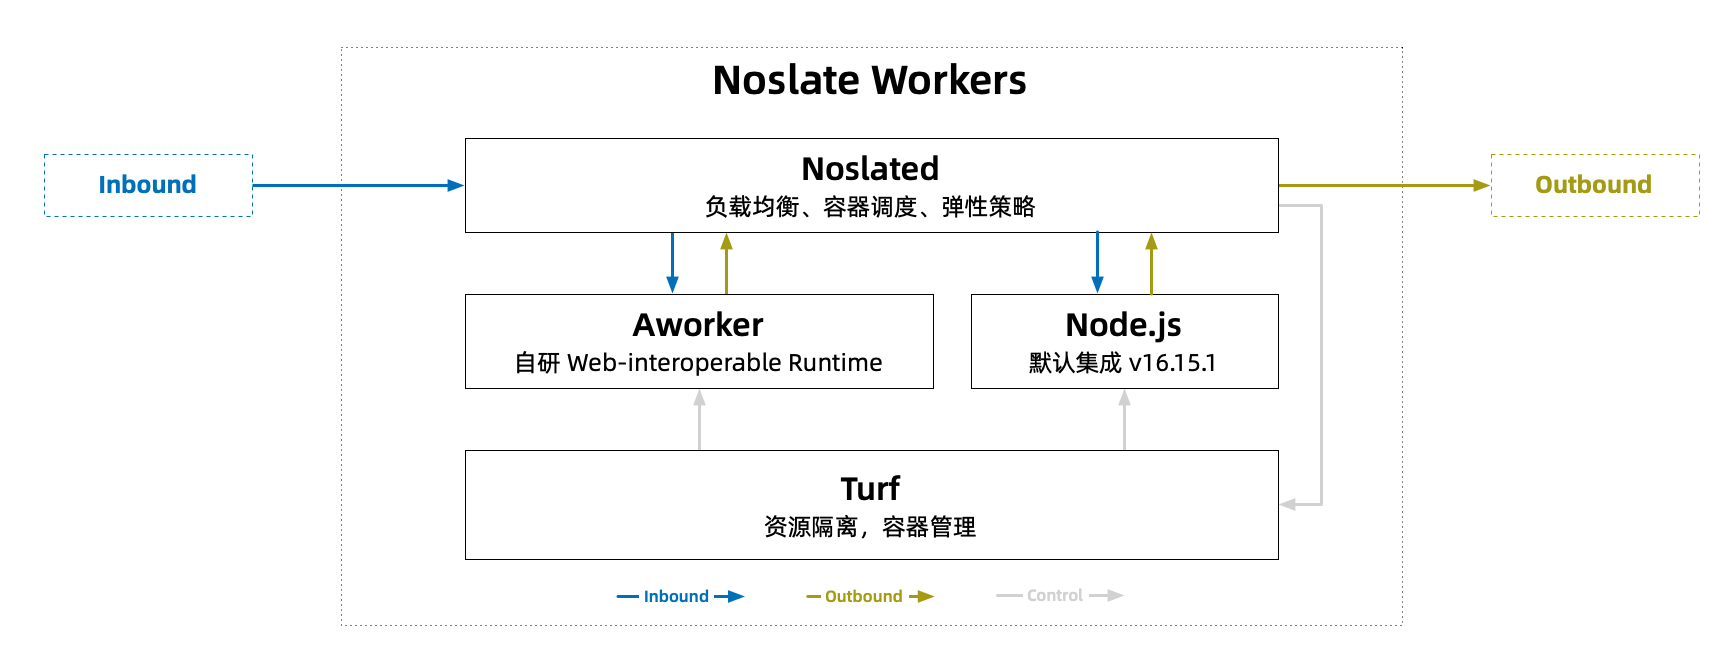 Noslate Workers 架构